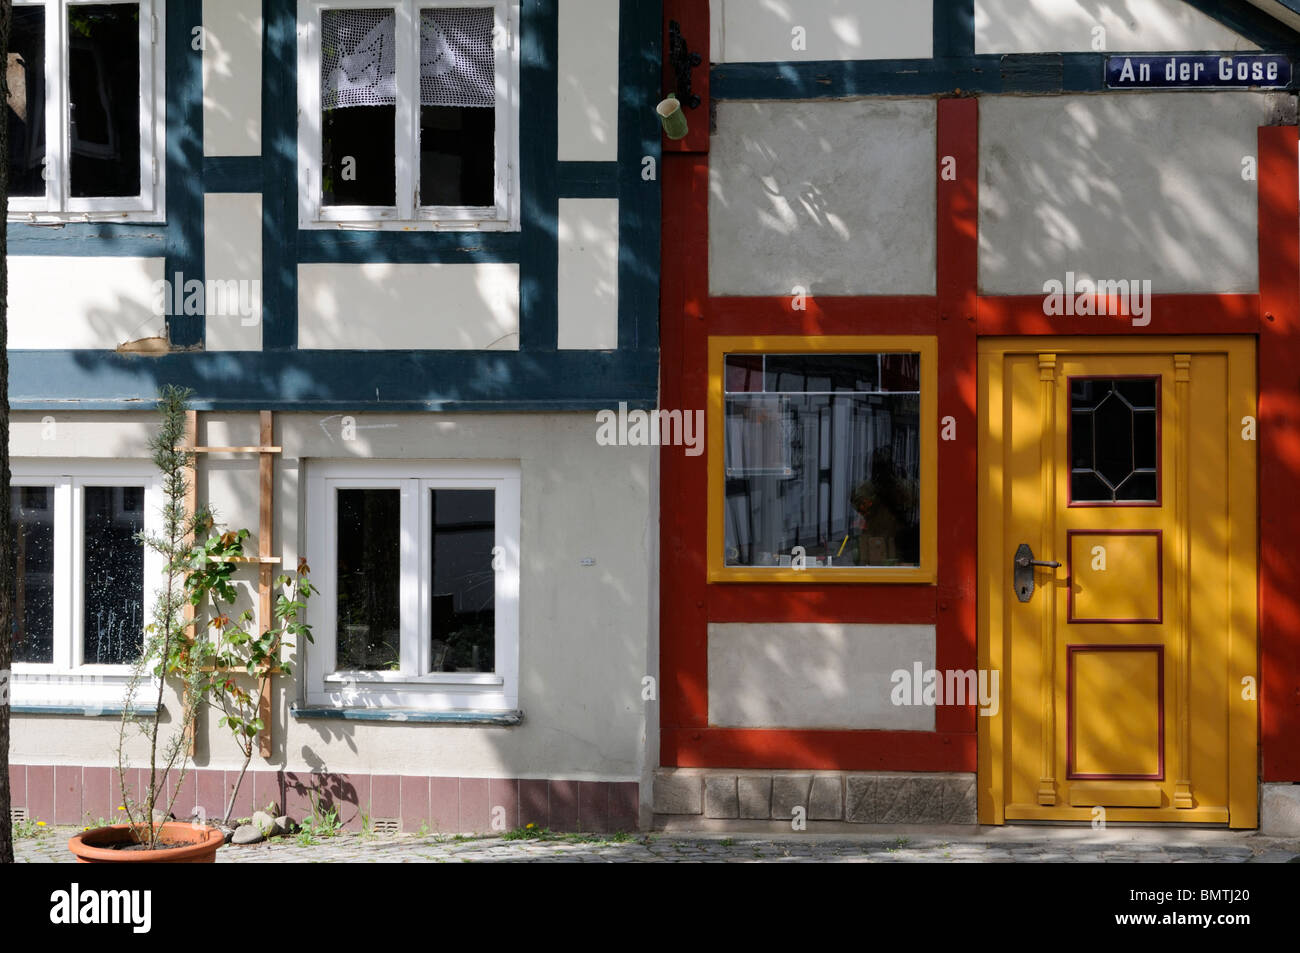 Fachwerkhaus in Goslar, Niedersachsen, Deutschland. - Half-timbered house in Goslar, Lower Saxony, Germany. Stock Photo